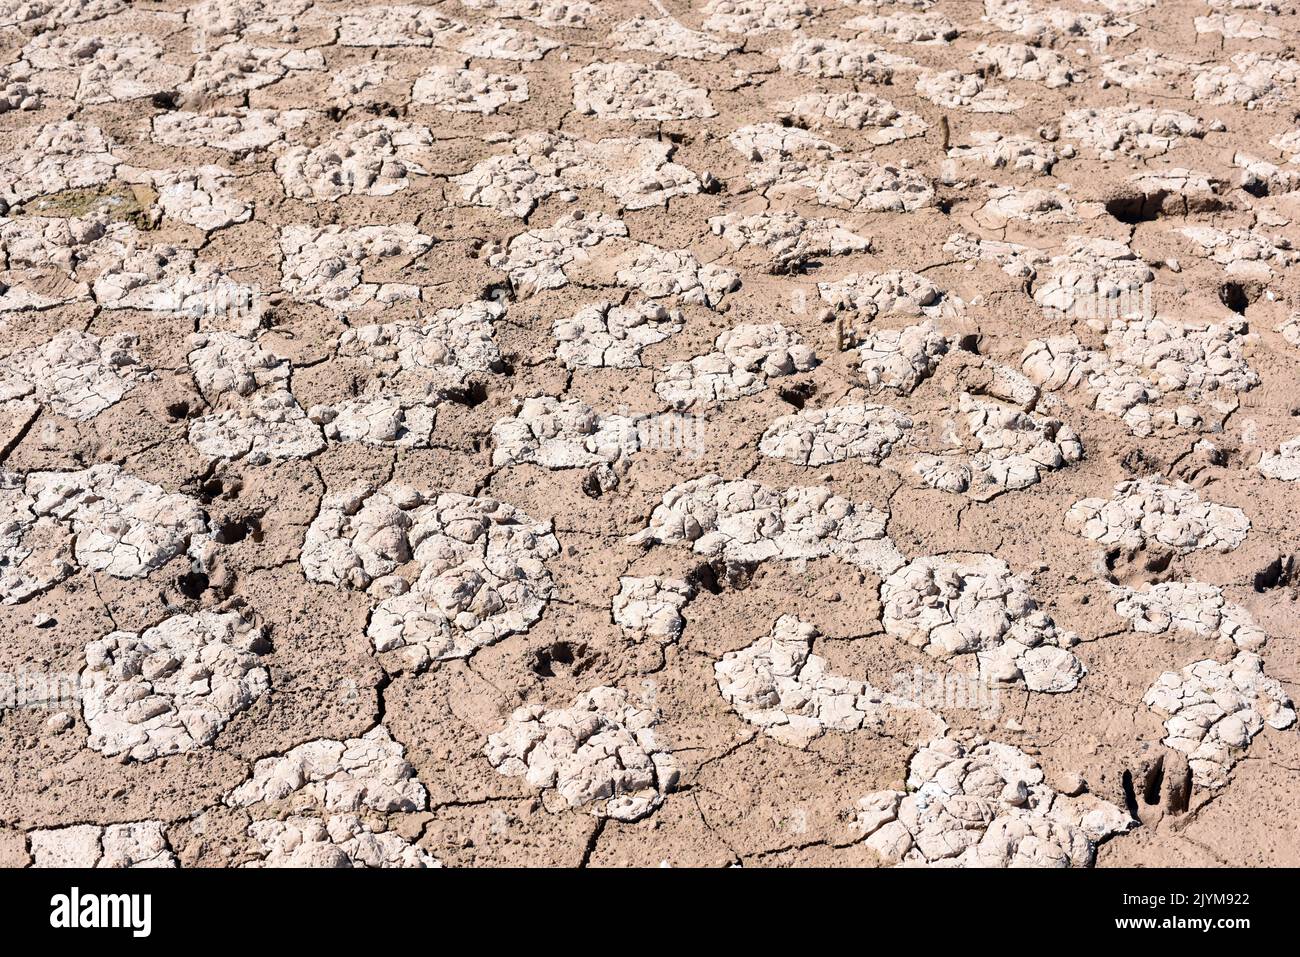 Tierra seca, cuarteada, debido a la sequía, producido por el cambio climático Foto de stock